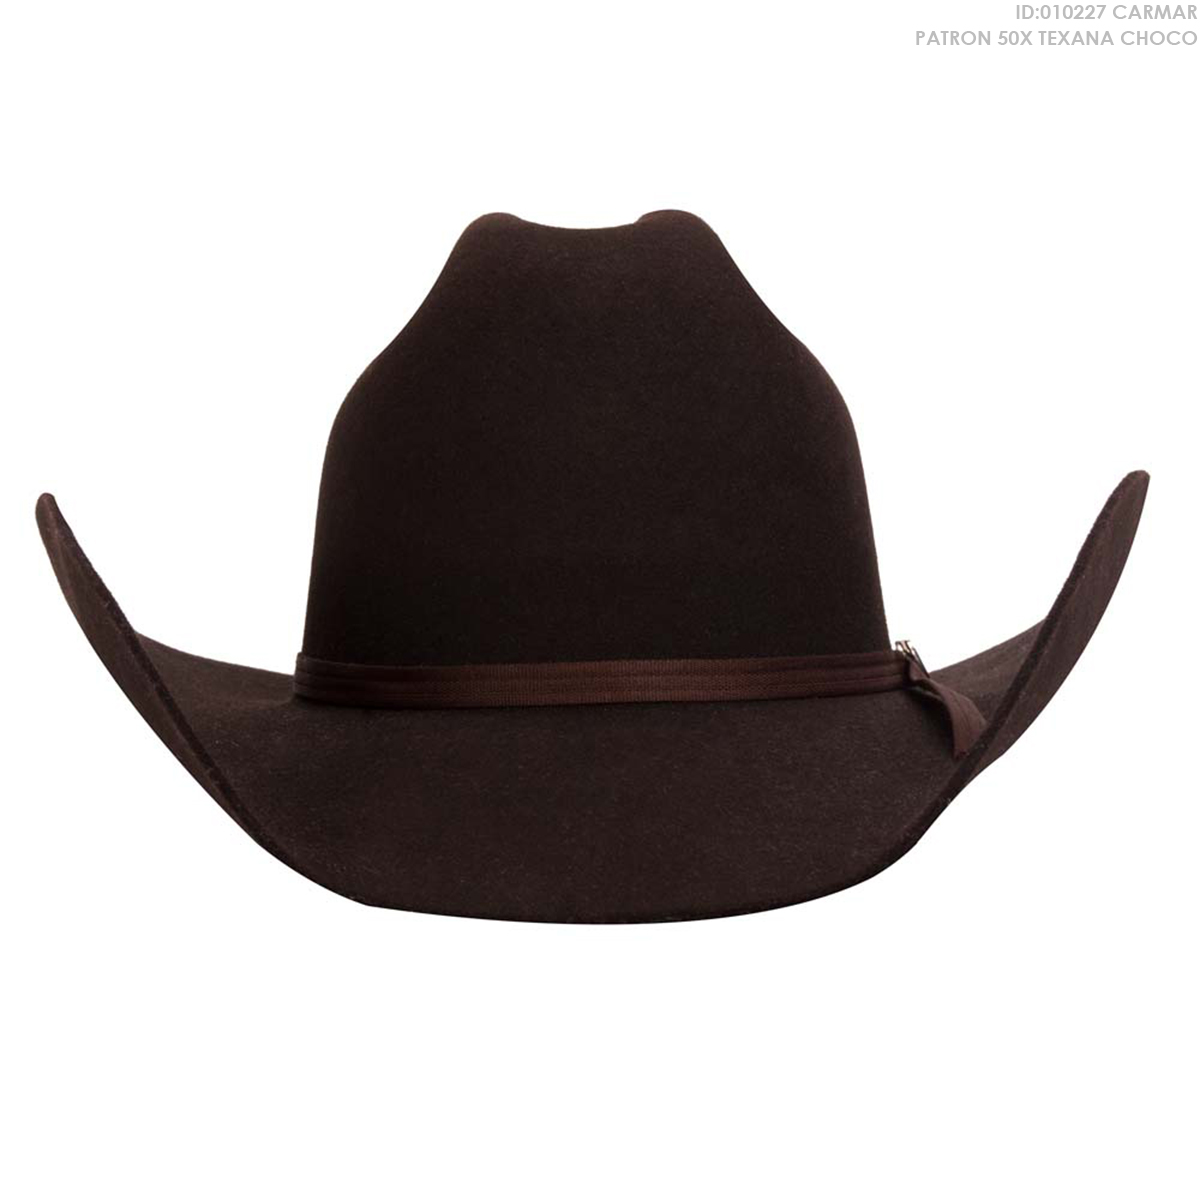 Sombrero Carmar Patron 50X Texana - Color: Cafe - JR Western